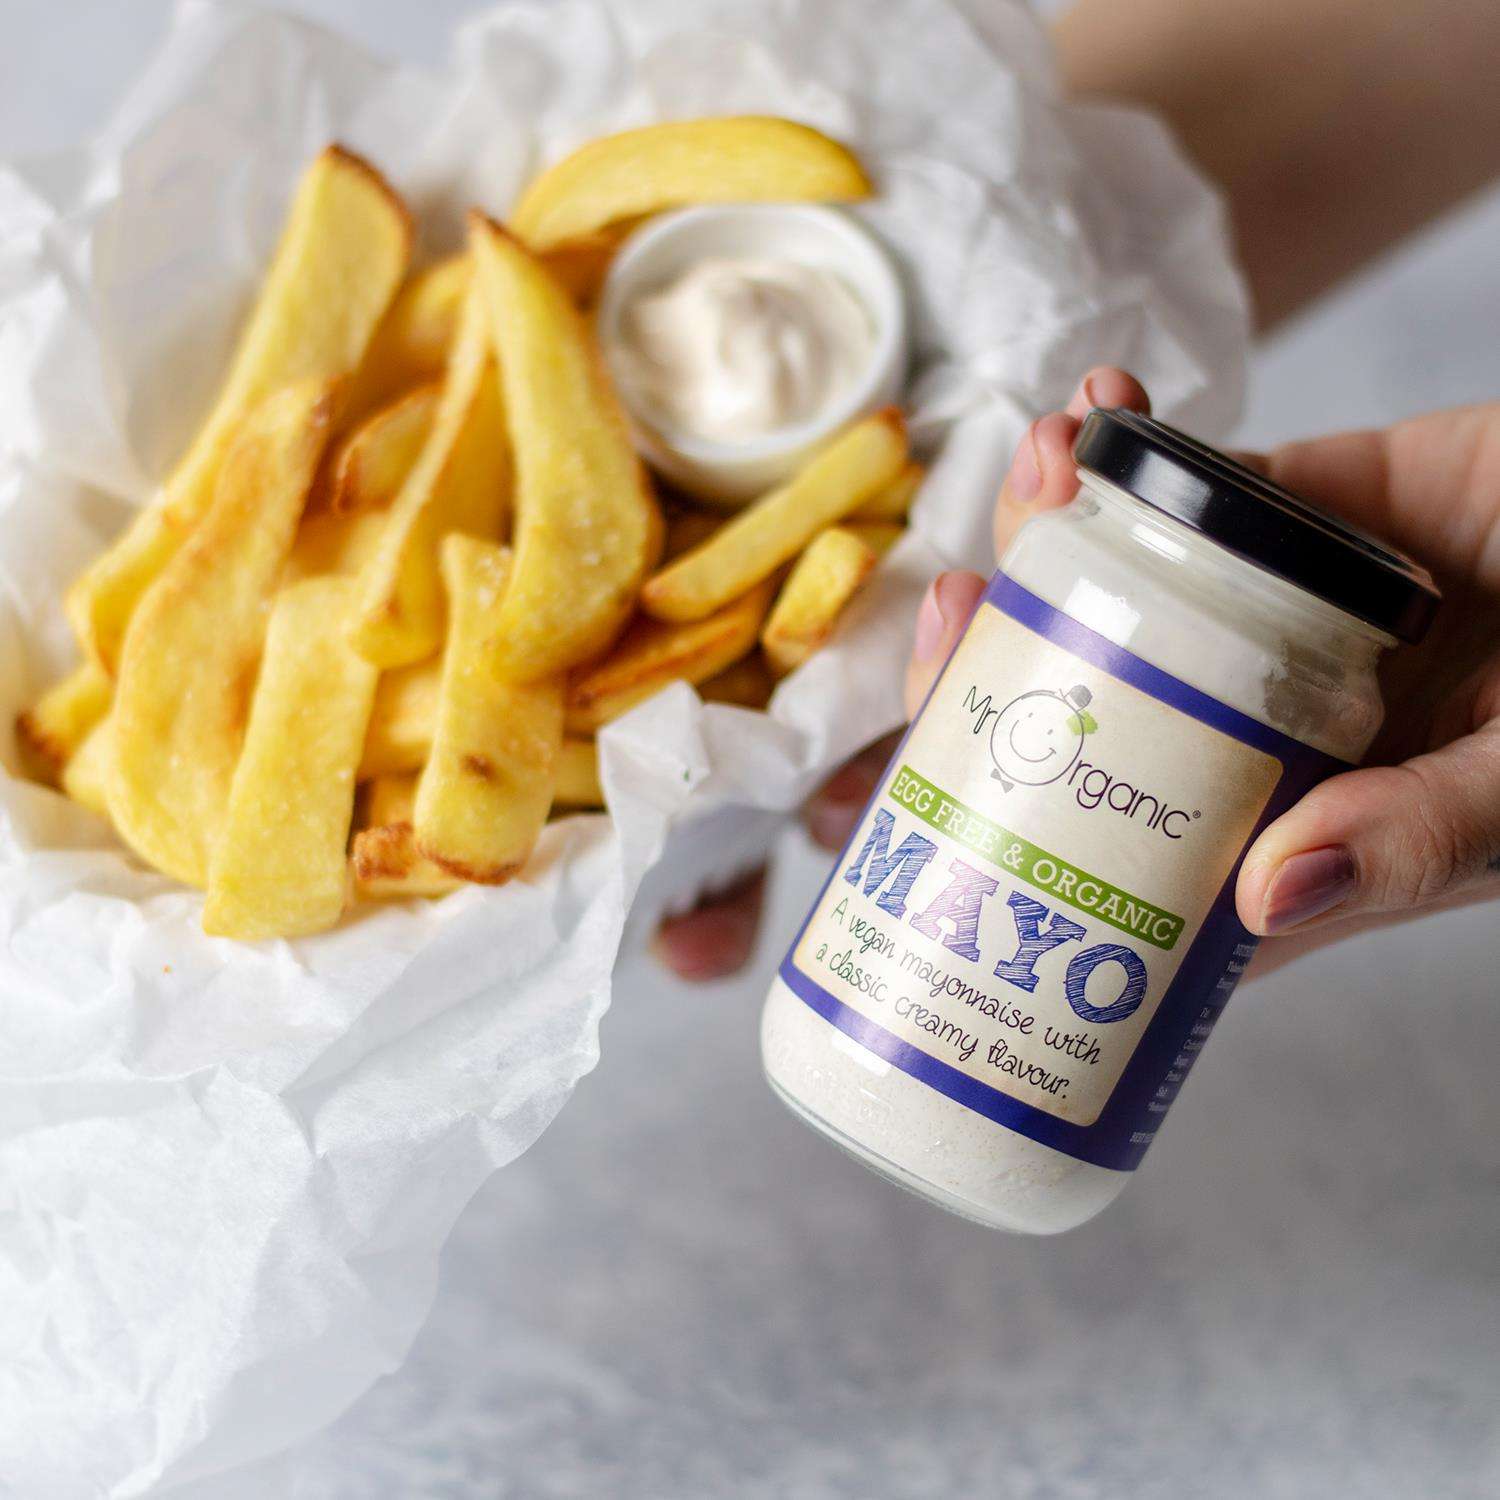 Sốt Mayo hữu cơ thuần chay – Mr Organic (250gr)